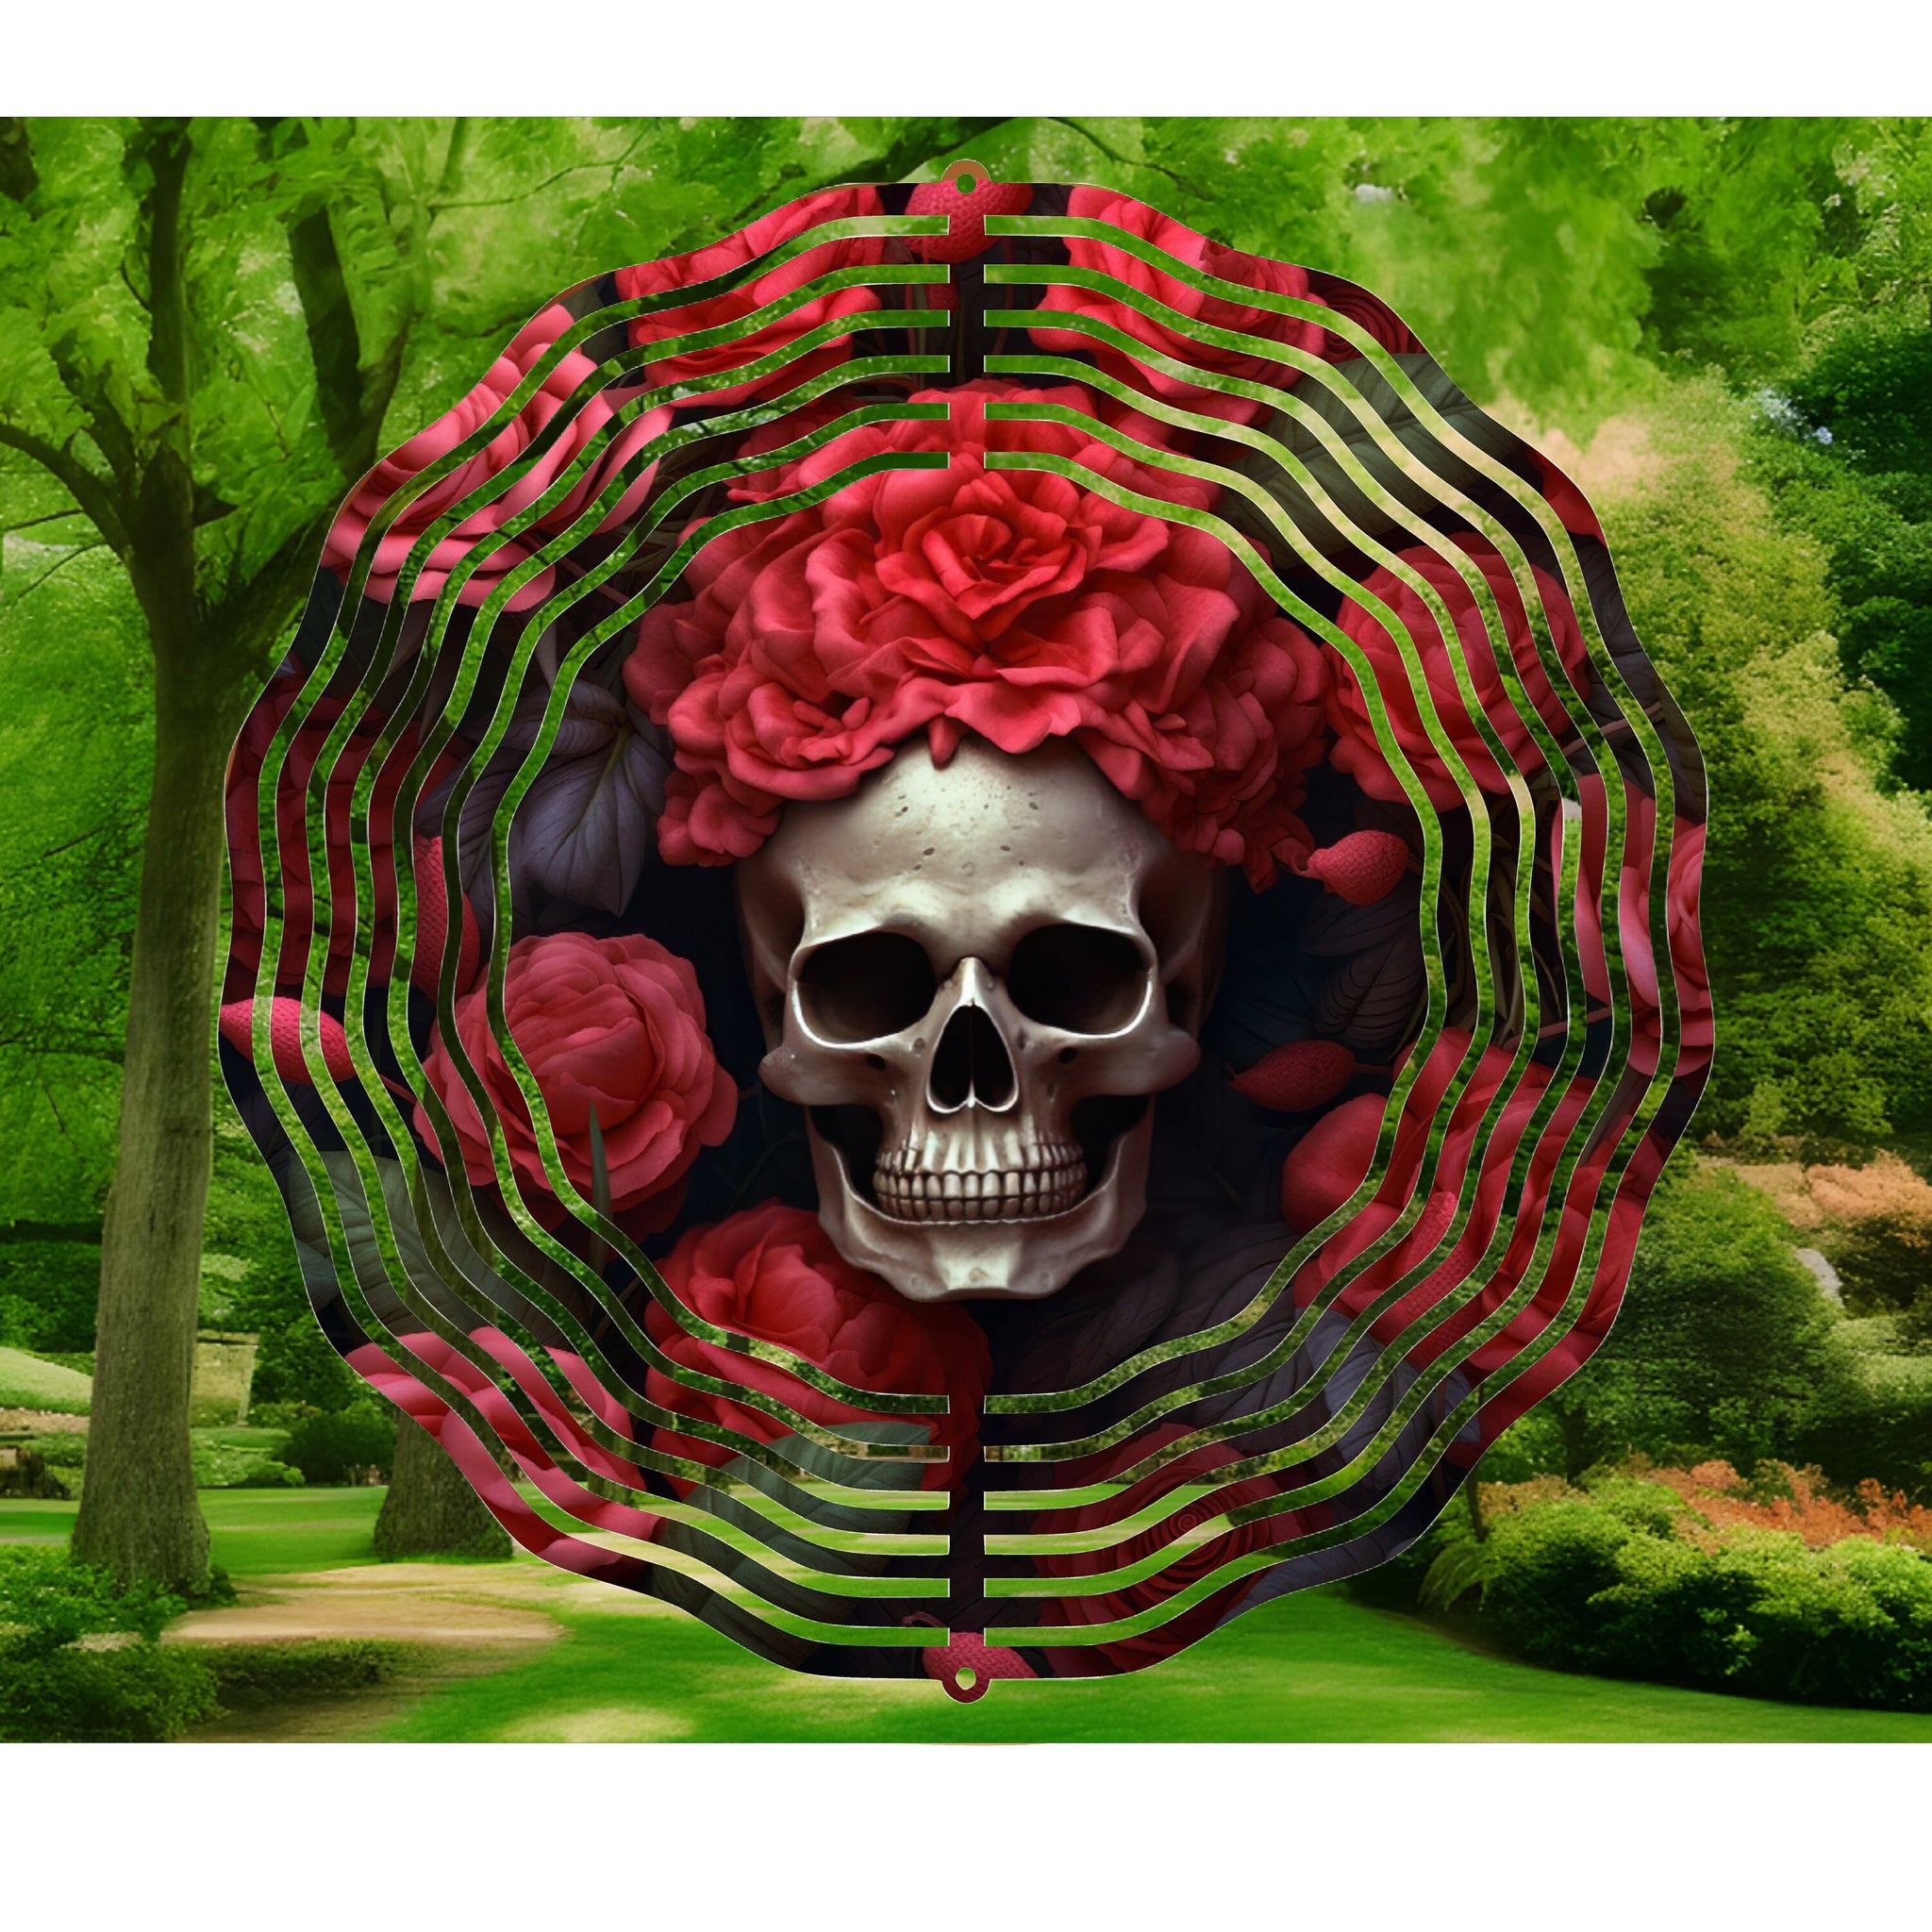 3D Skull, Wind Spinner, Skull And Roses, Yard Art, Garden Decorations